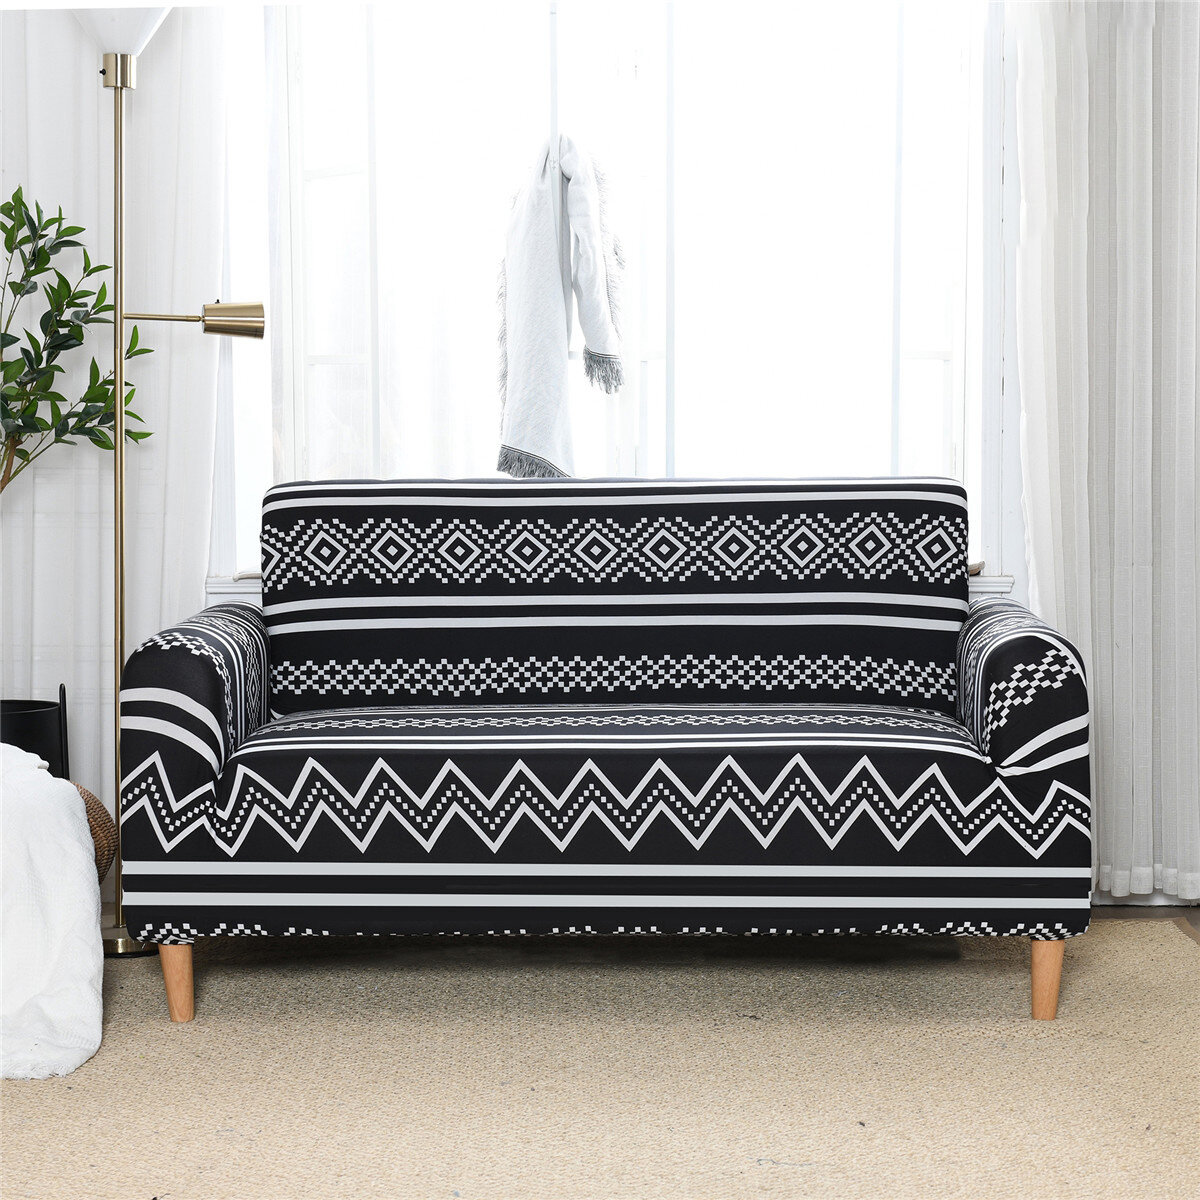 2 مقاعد غطاء أريكة مرن طباعة عالمية حامي مقعد غطاء أريكة ممتد غطاء أريكة ديكور المنزل والمكتب